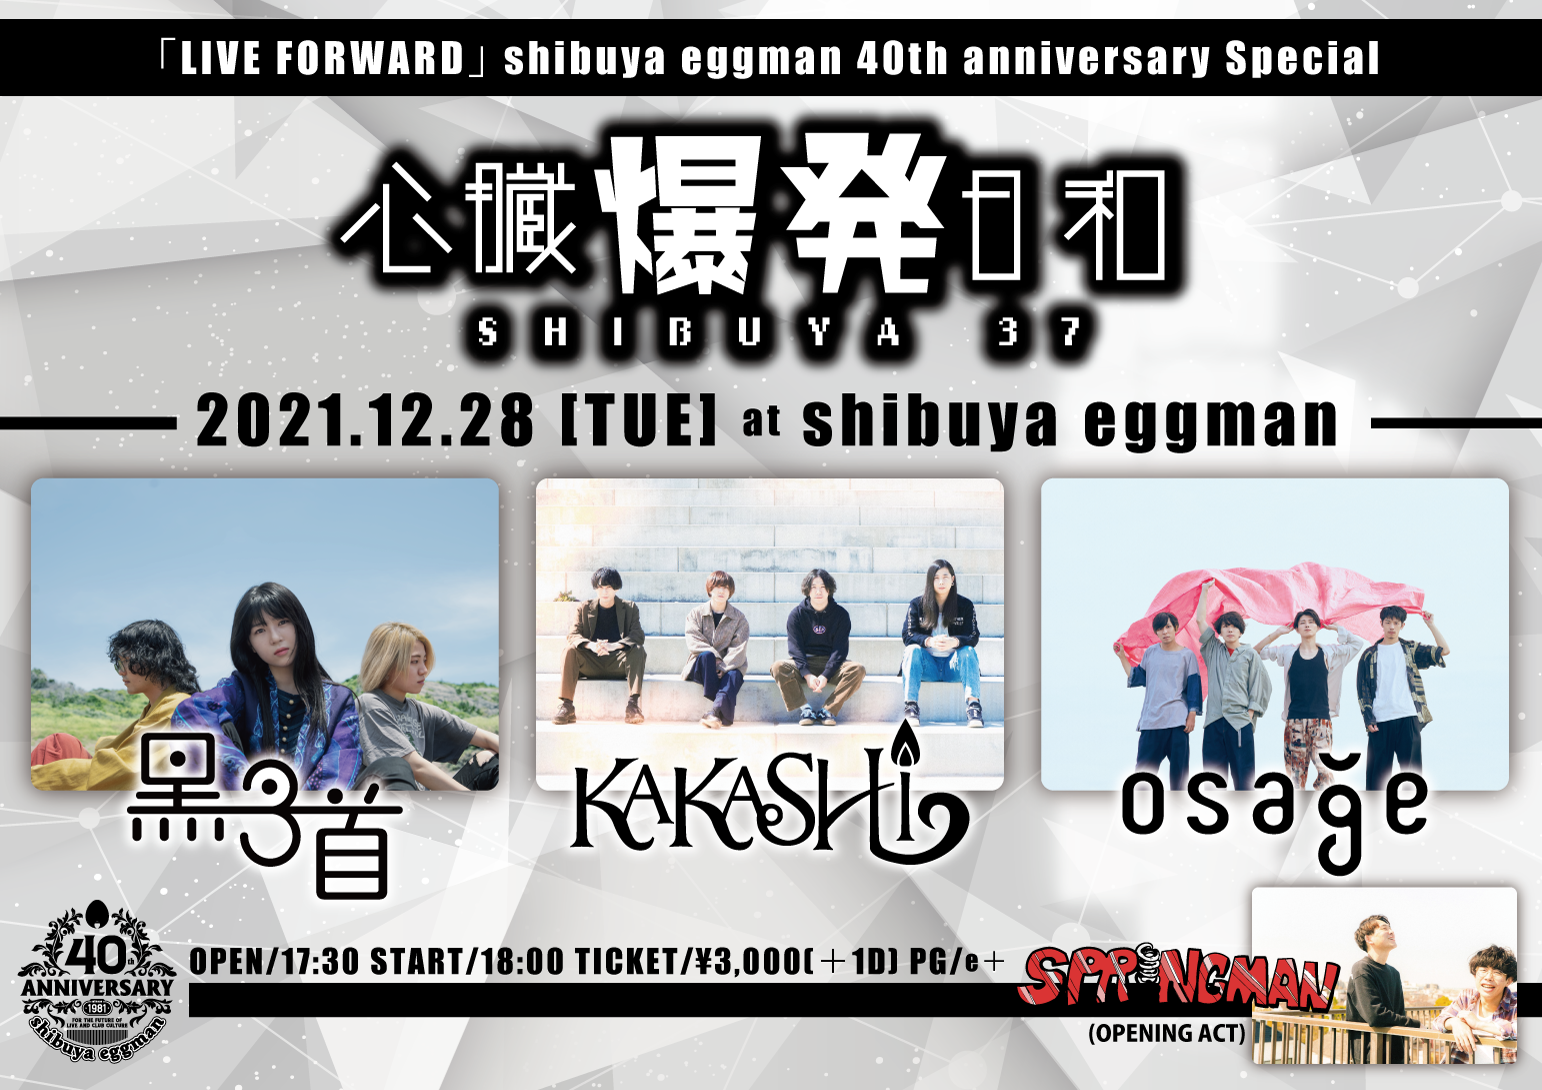 心臓爆発日和 -SHIBUYA37-  〜「LIVE FORWARD」 shibuya eggman 40th anniversary Special〜